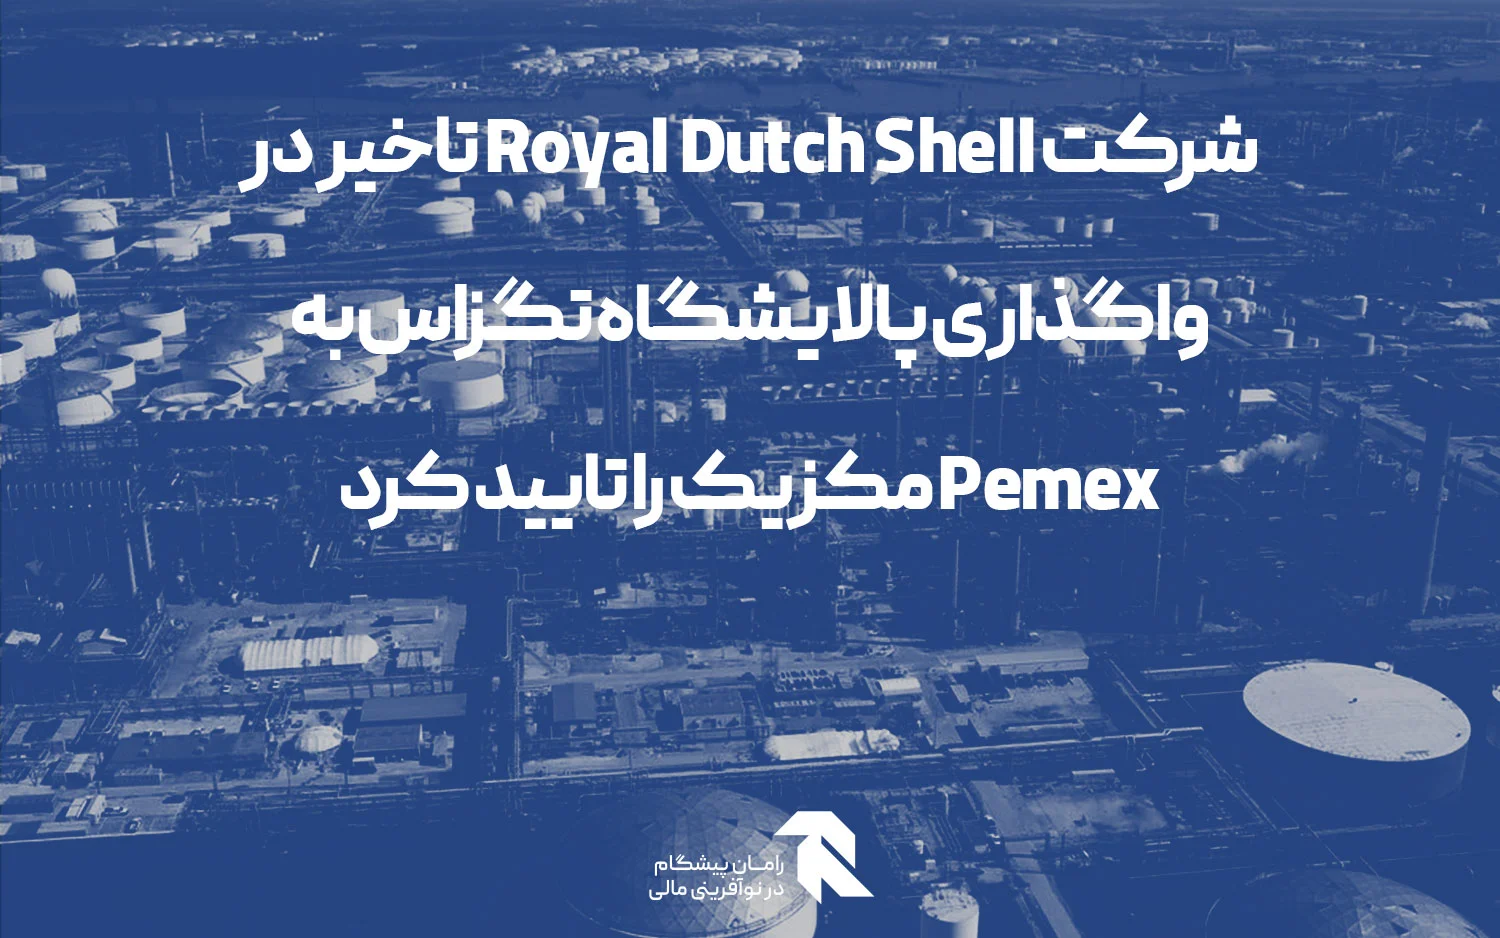 شرکت Royal Dutch Shell تاخیر در واگذاری پالایشگاه تگزاس به Pemex مکزیک را تایید کرد